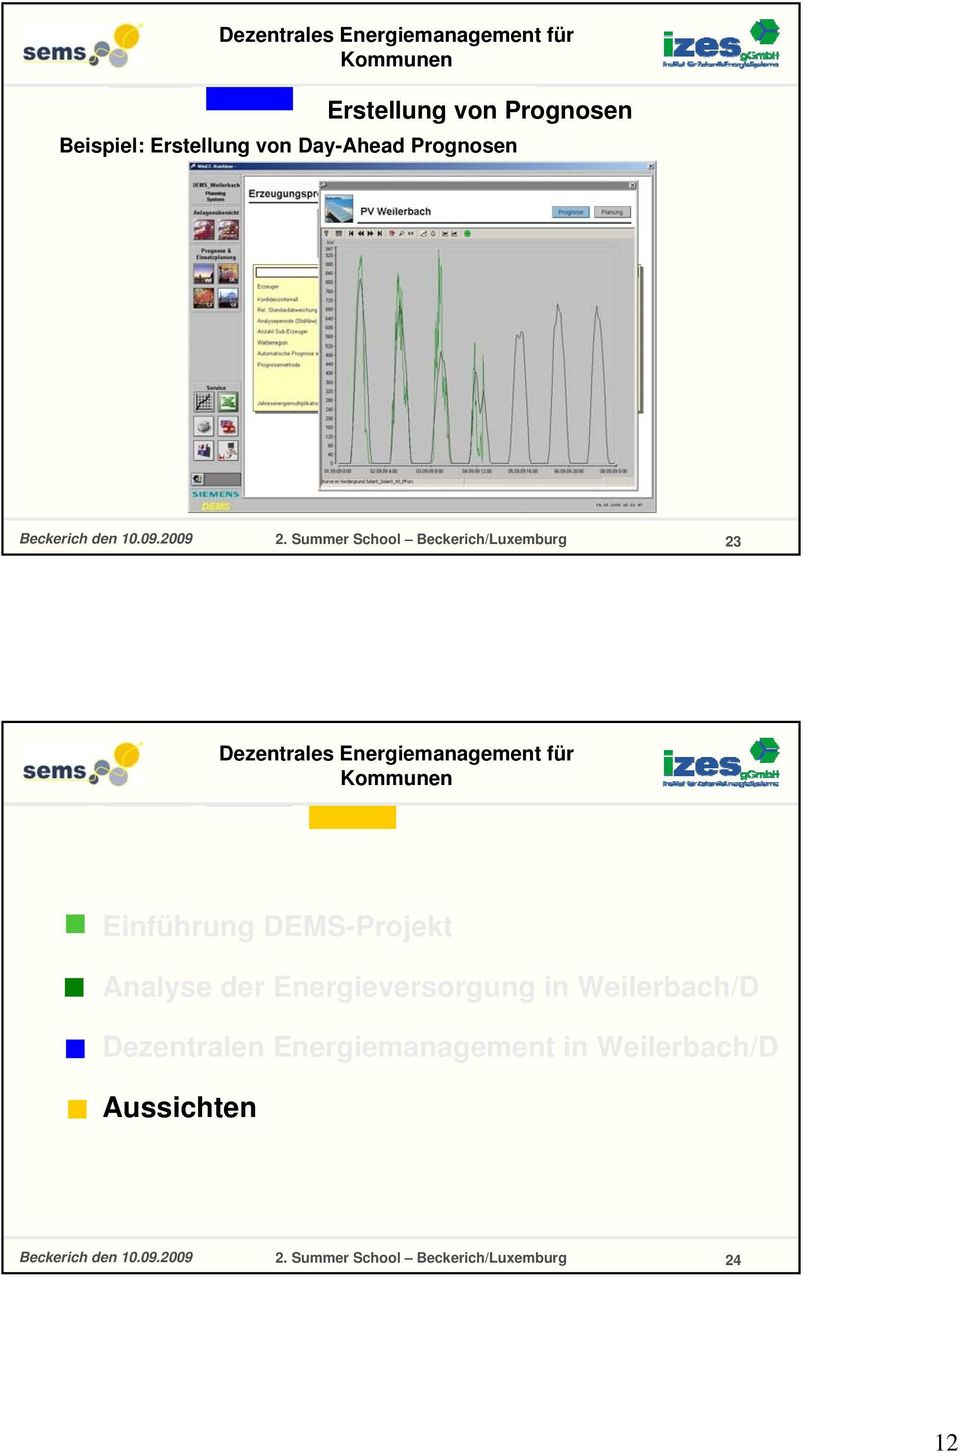 Analyse der Energieversorgung in Weilerbach/D